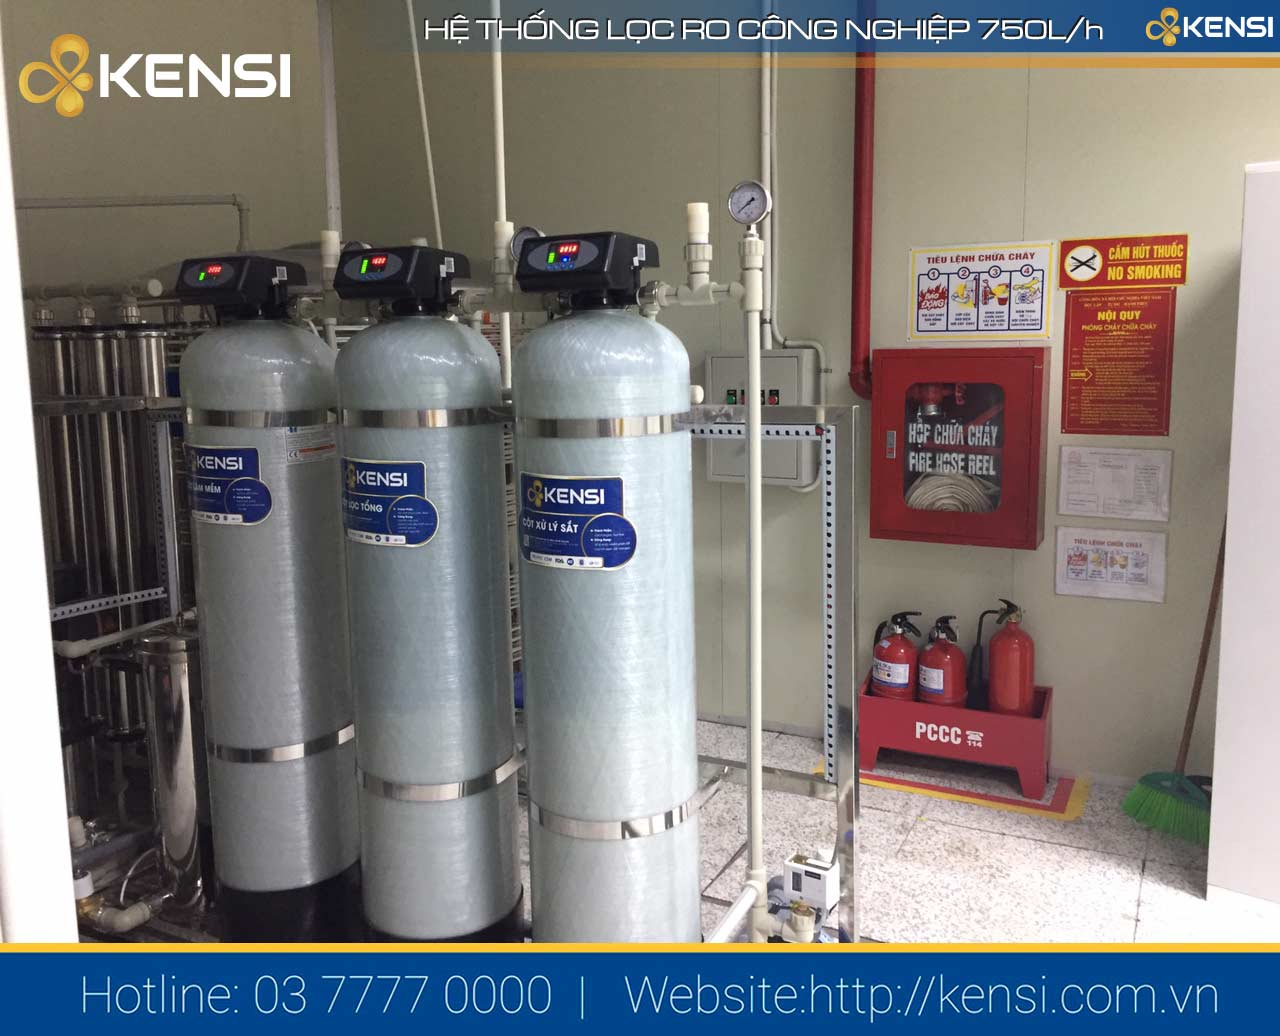 Tekcom cung cấp đa dạng dòng máy lọc nước RO công nghiệp